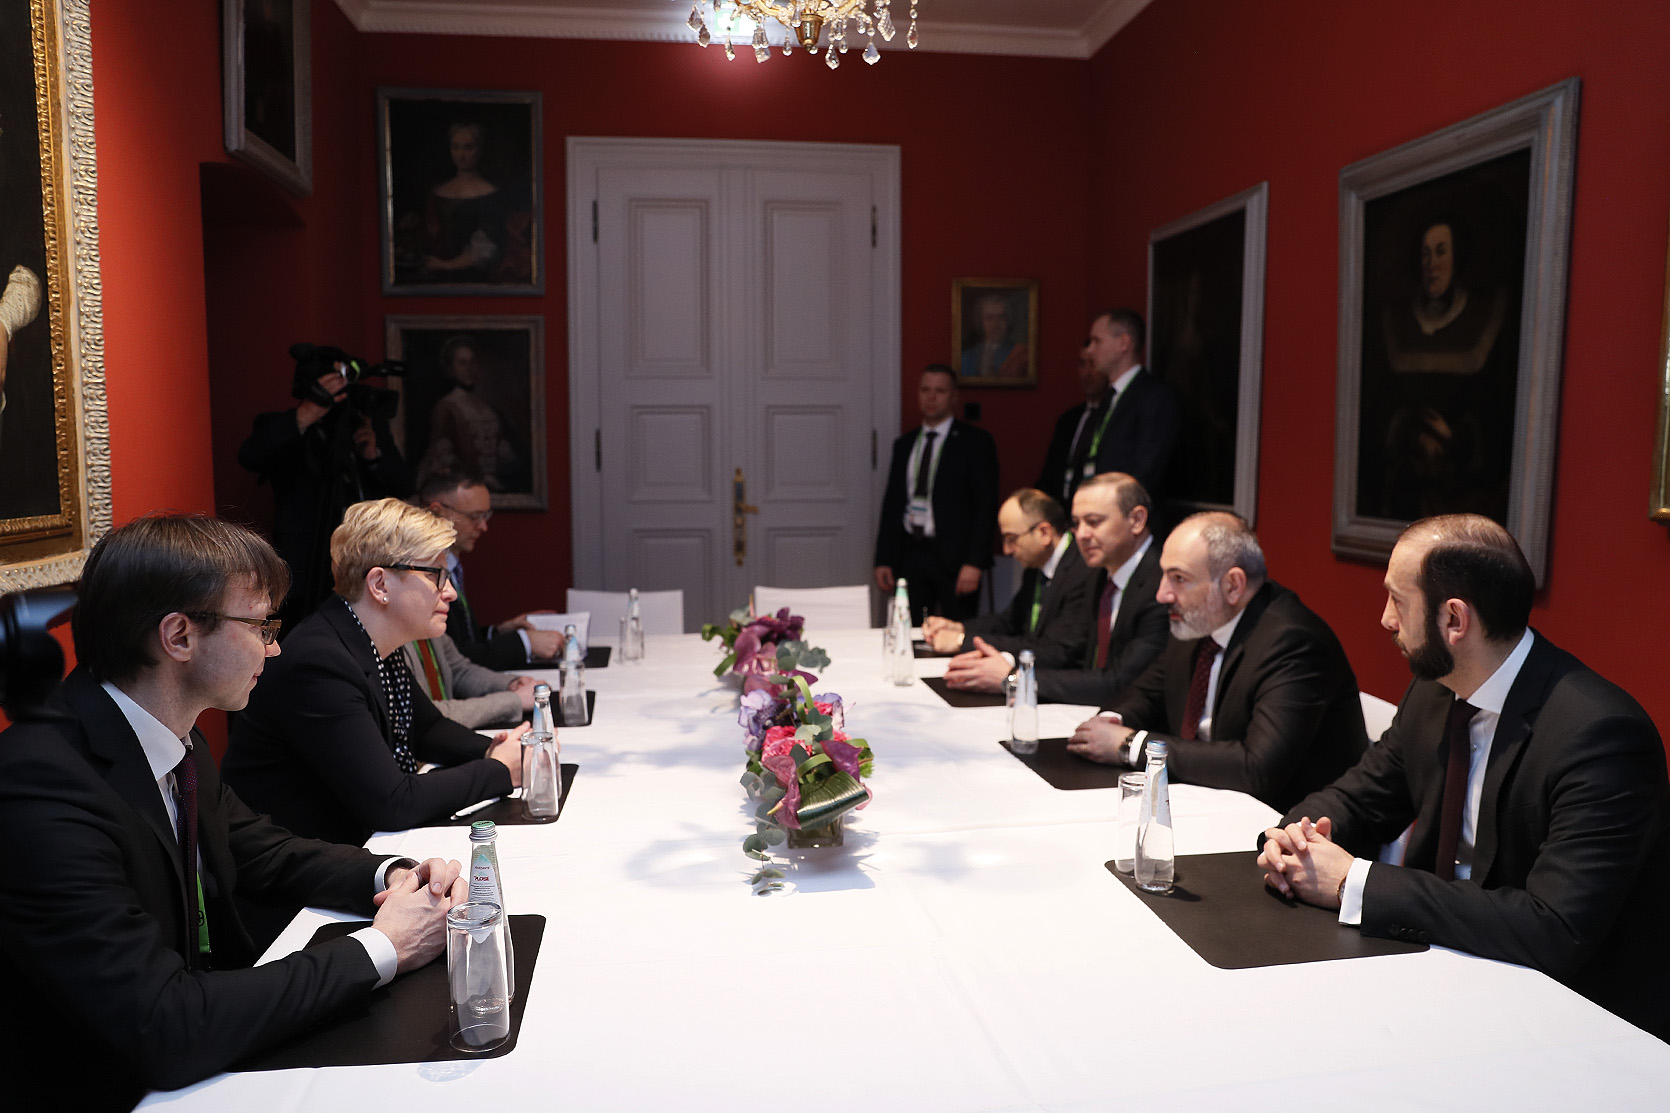 Մյունխենում տեղի է ունեցել Հայաստանի և Լիտվայի վարչապետների հանդիպումը